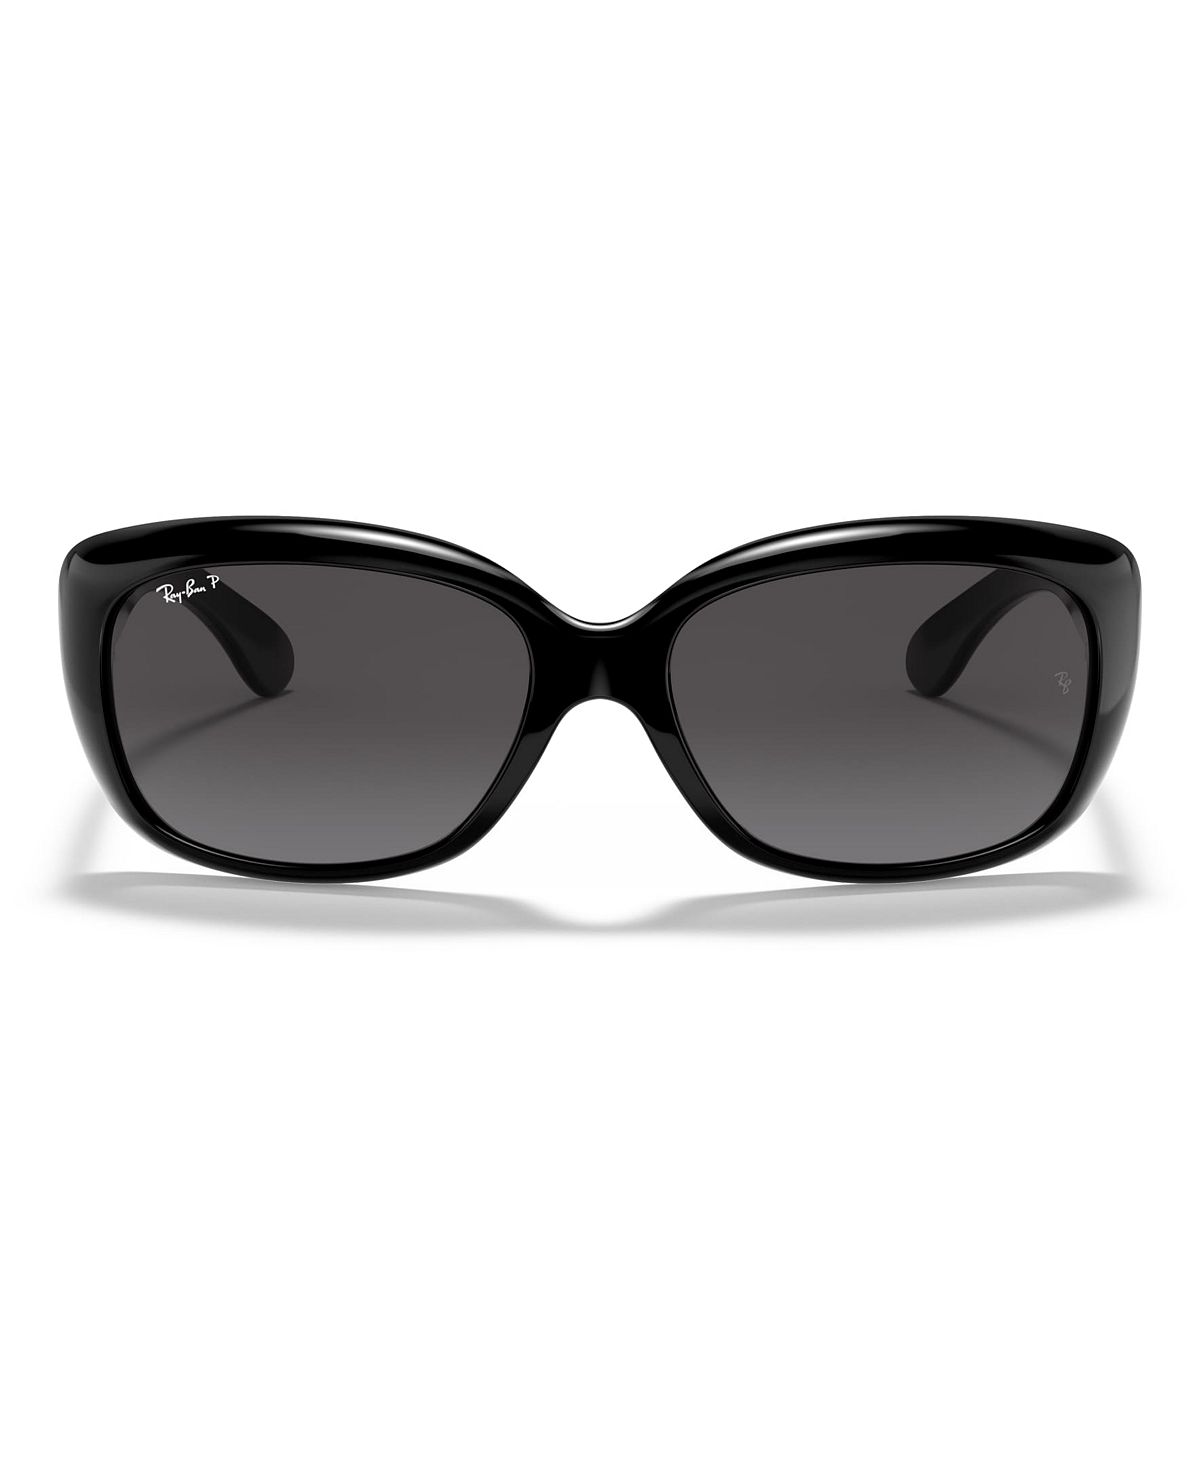 Женские поляризованные солнцезащитные очки, RB4101 JACKIE OHH Ray-Ban солнцезащитные очки ray ban 4101 601 t3 jackie ohh